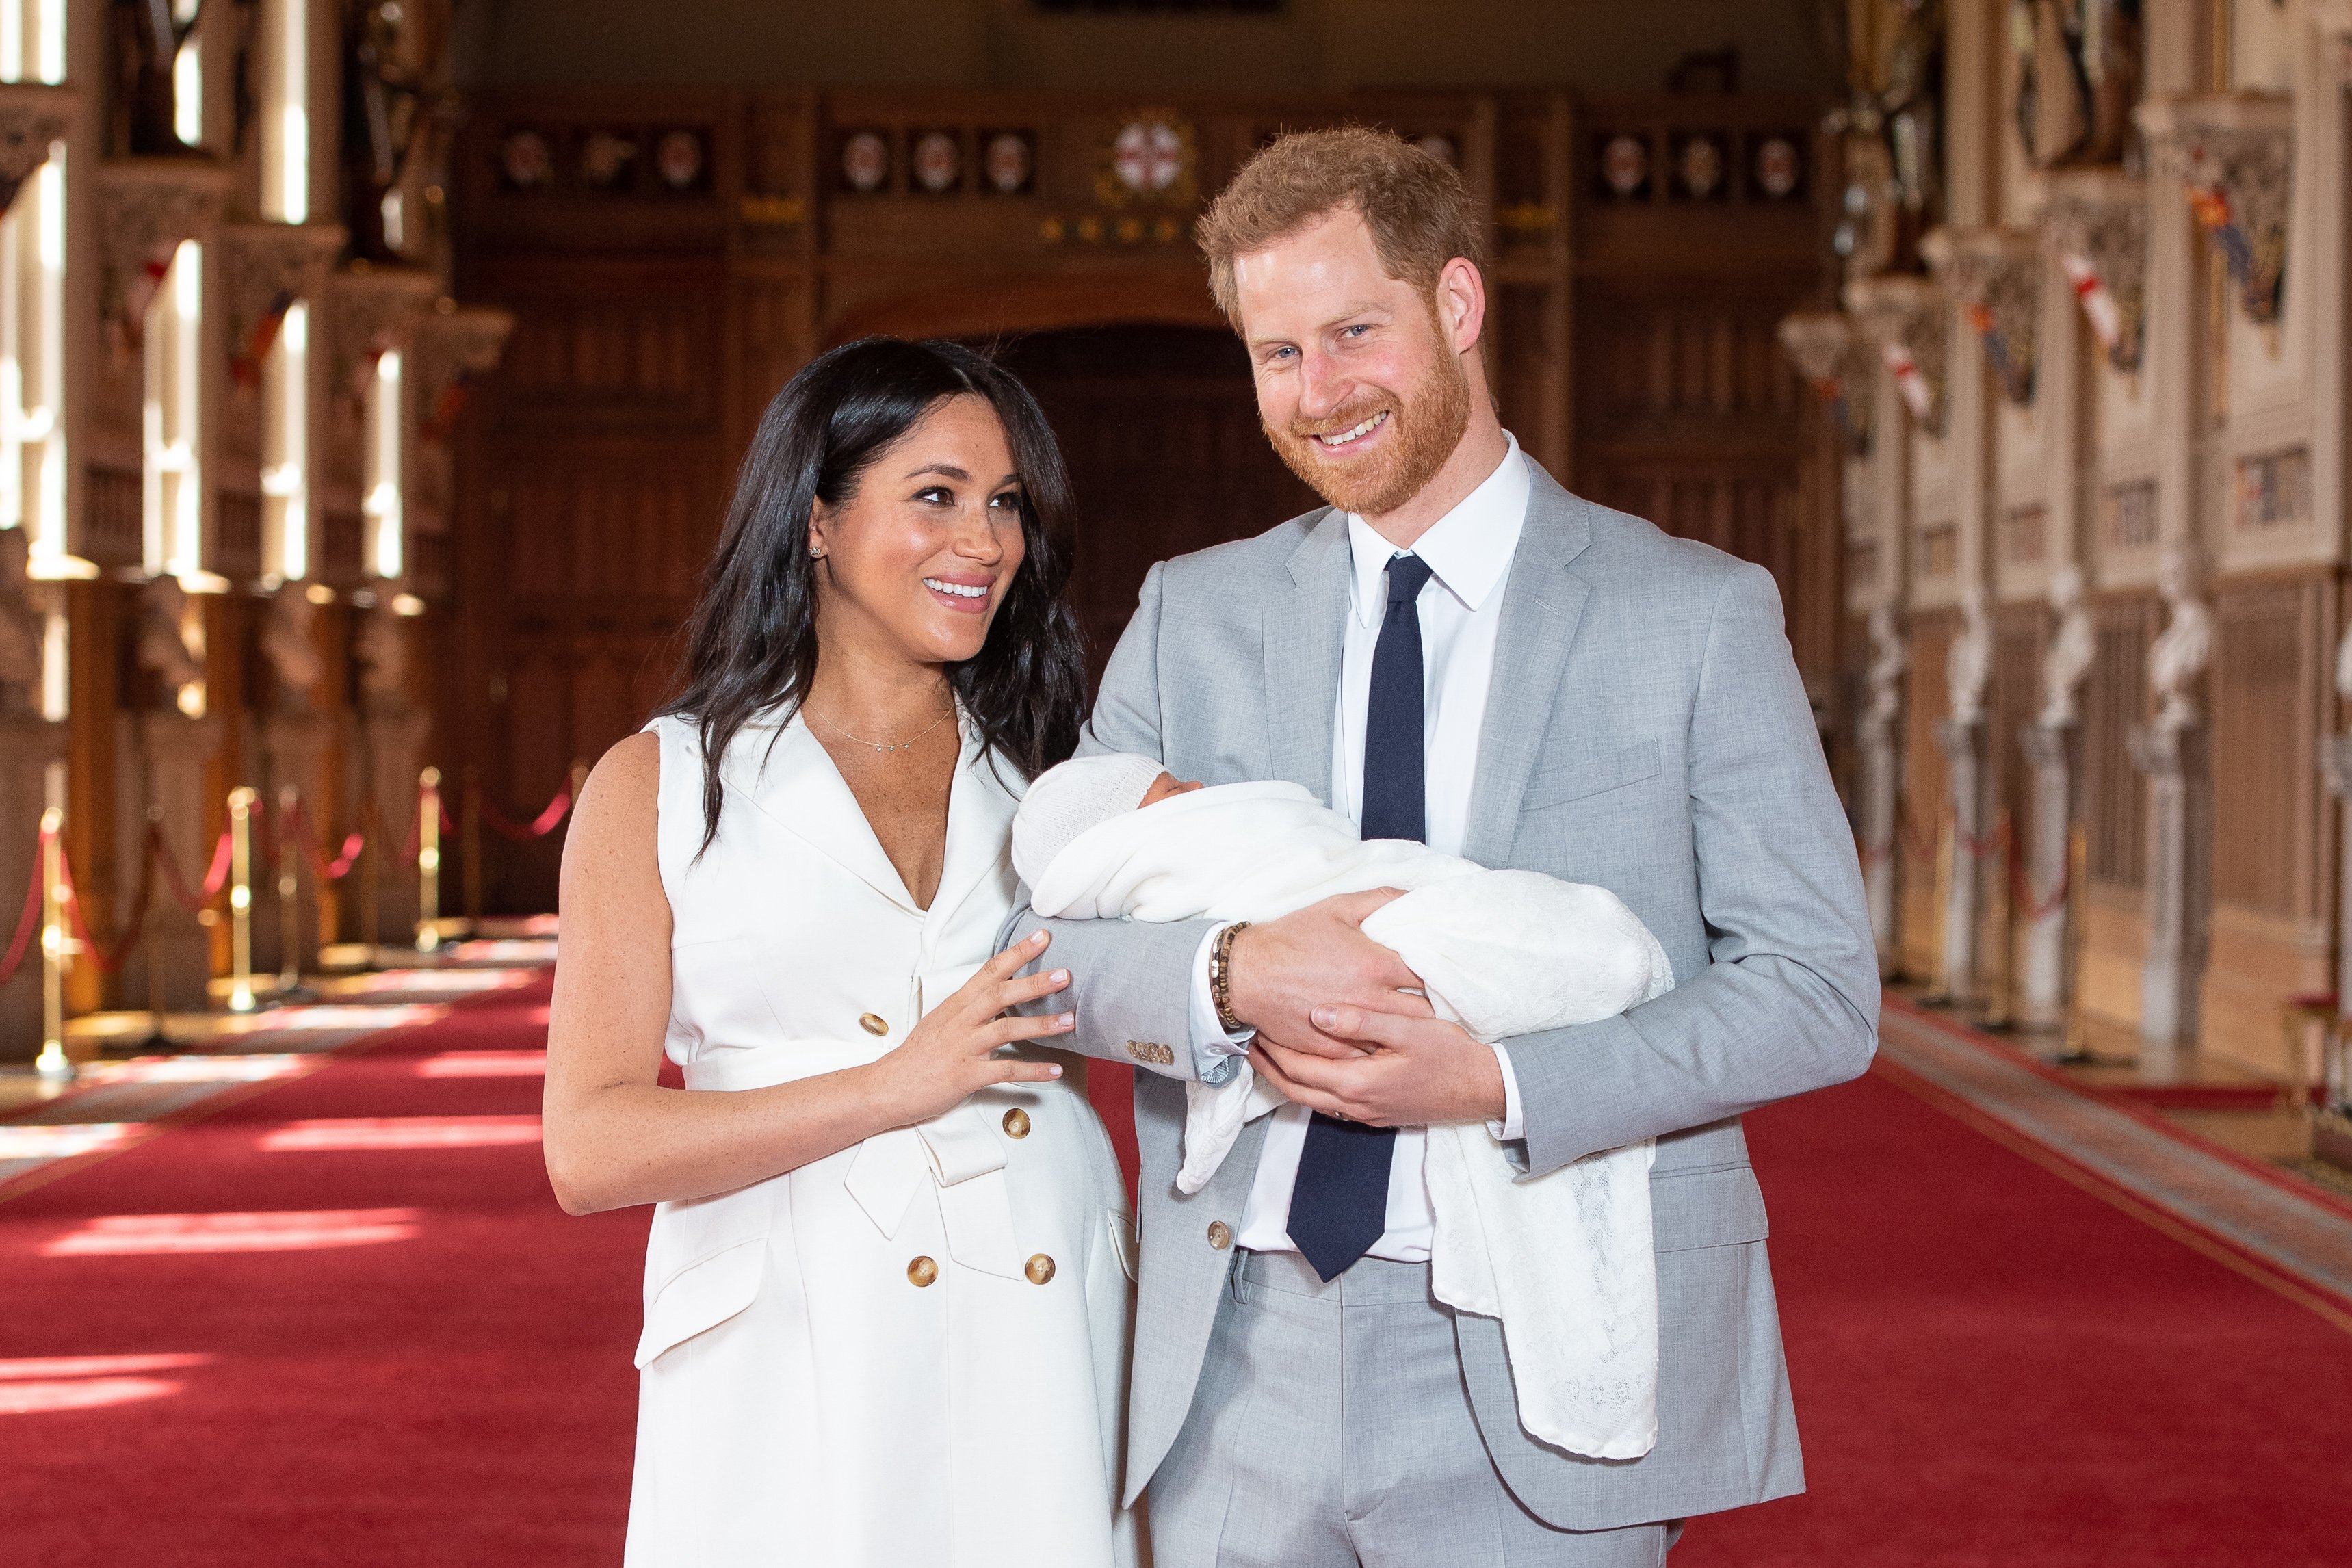 Prinz Harry und Meghan Markle posieren mit dem neugeborenen Archie Harrison Mountbatten-Windsor im Schloss Windsor am 8. Mai 2019 in Windsor, England. | Quelle: Getty Images